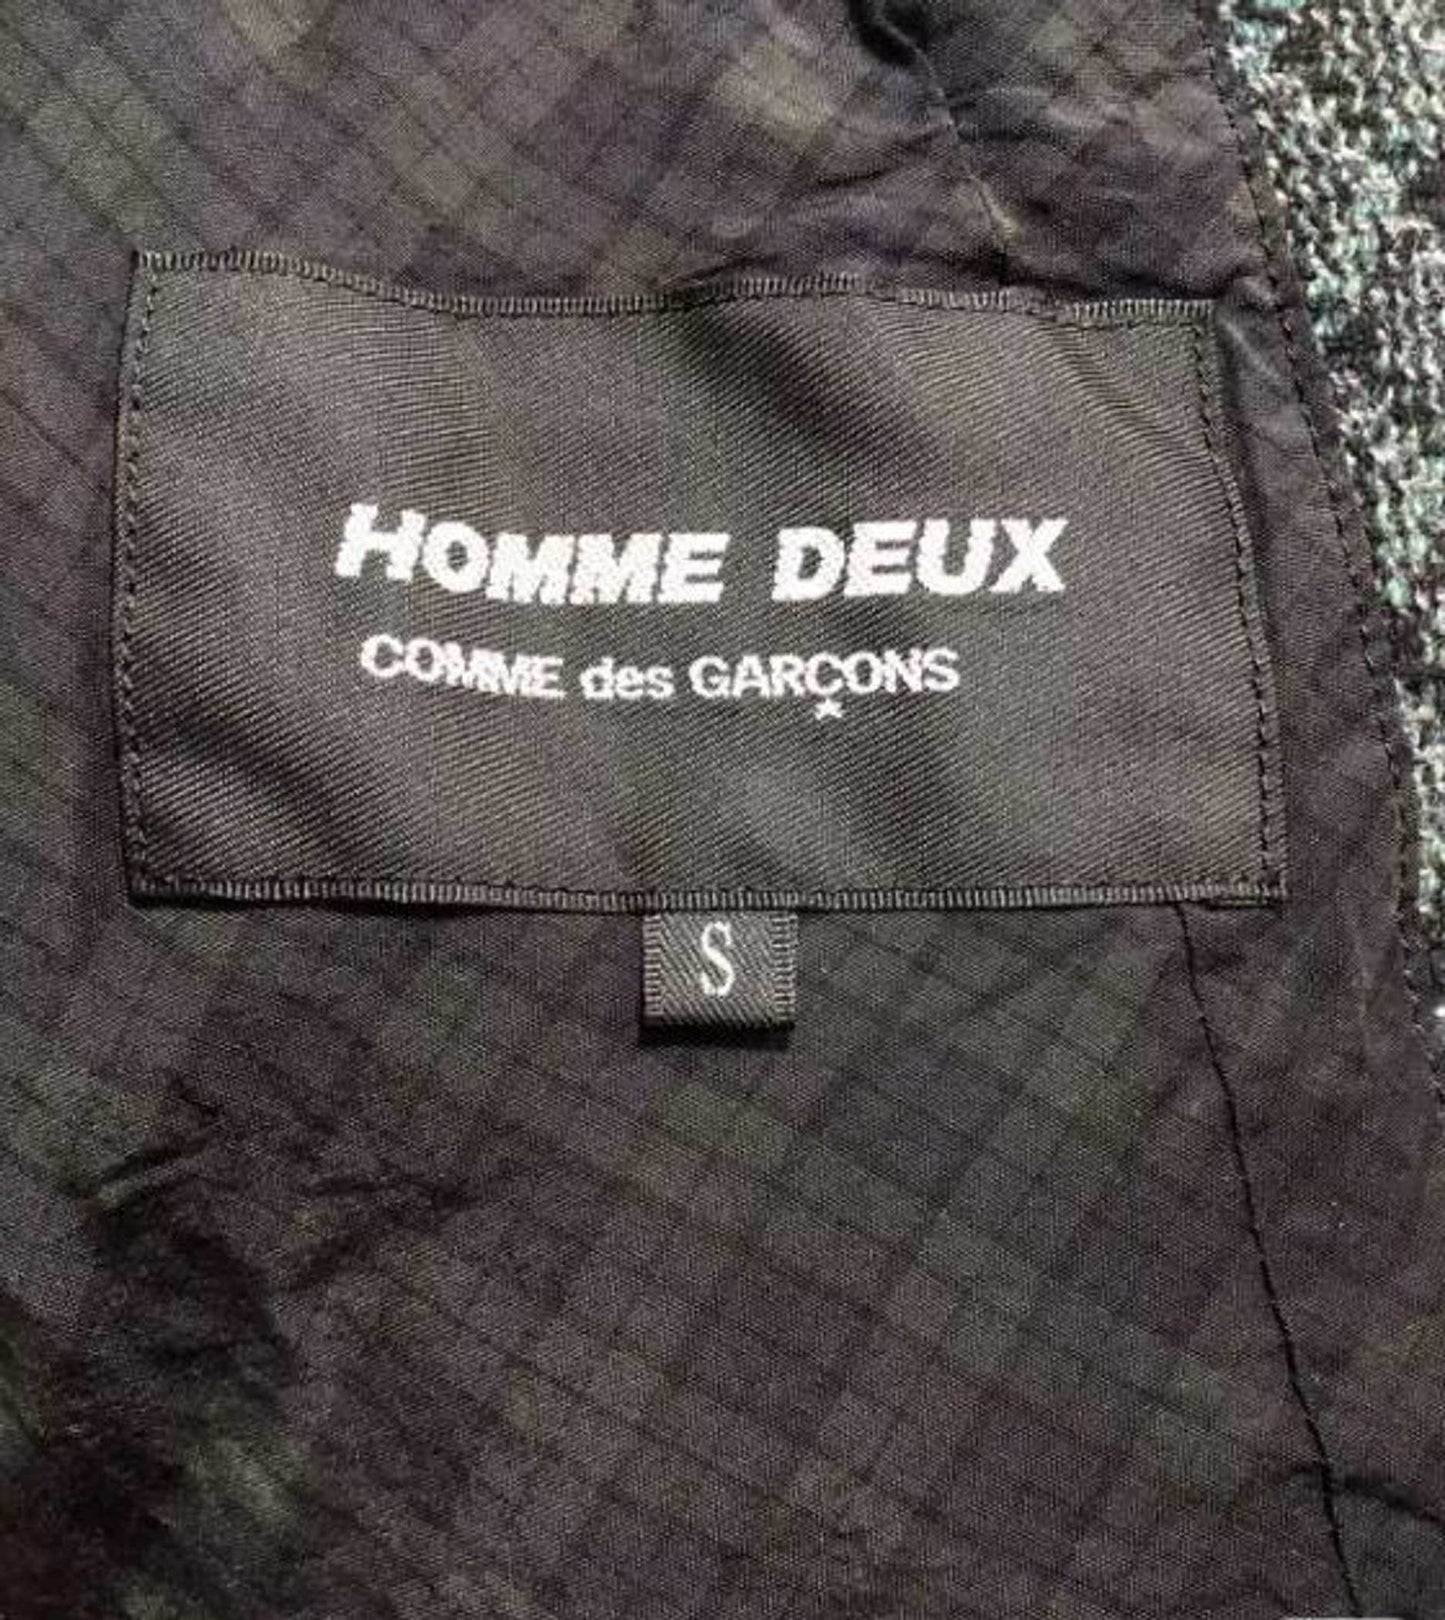 CDG Homme DEUX Plaid Suit JKT